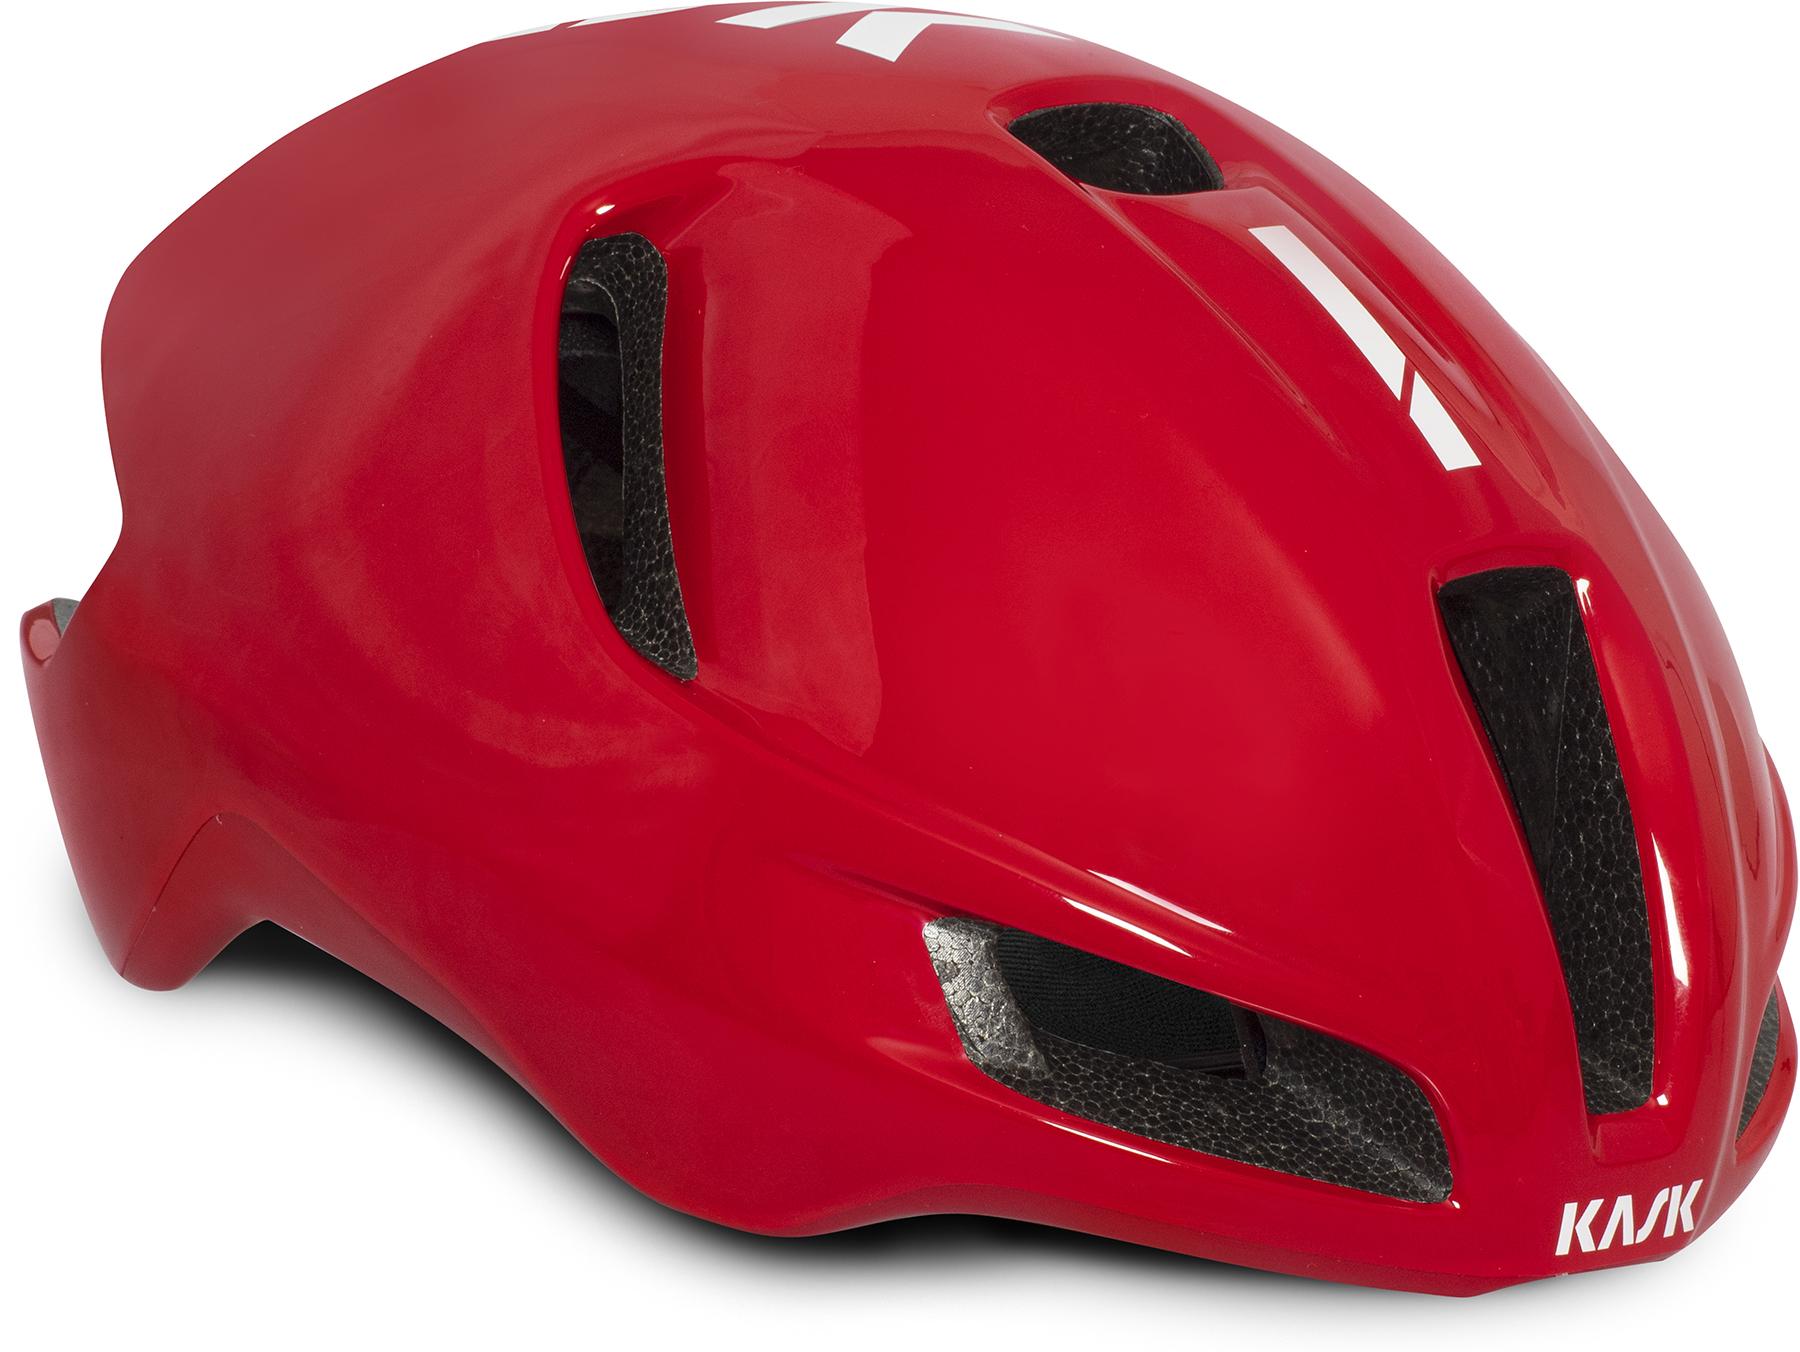 Kask Utopia Road Cycling Helmet (wg11) - Red/black